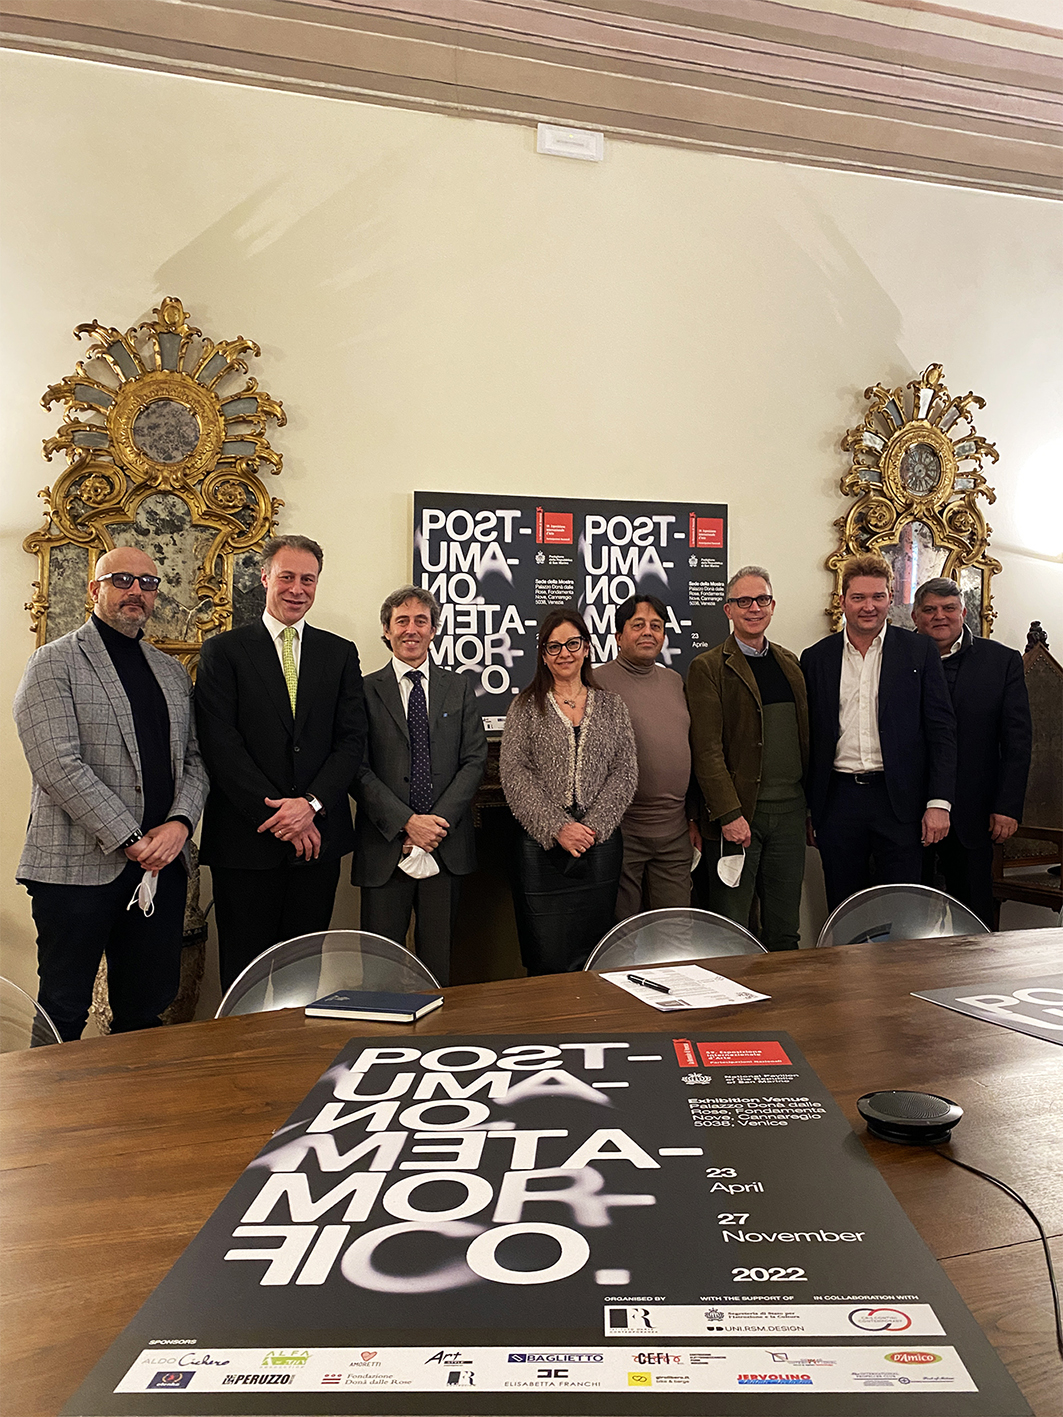 Presente anche la Repubblica di San Marino alla Biennale Arte di Venezia 2022